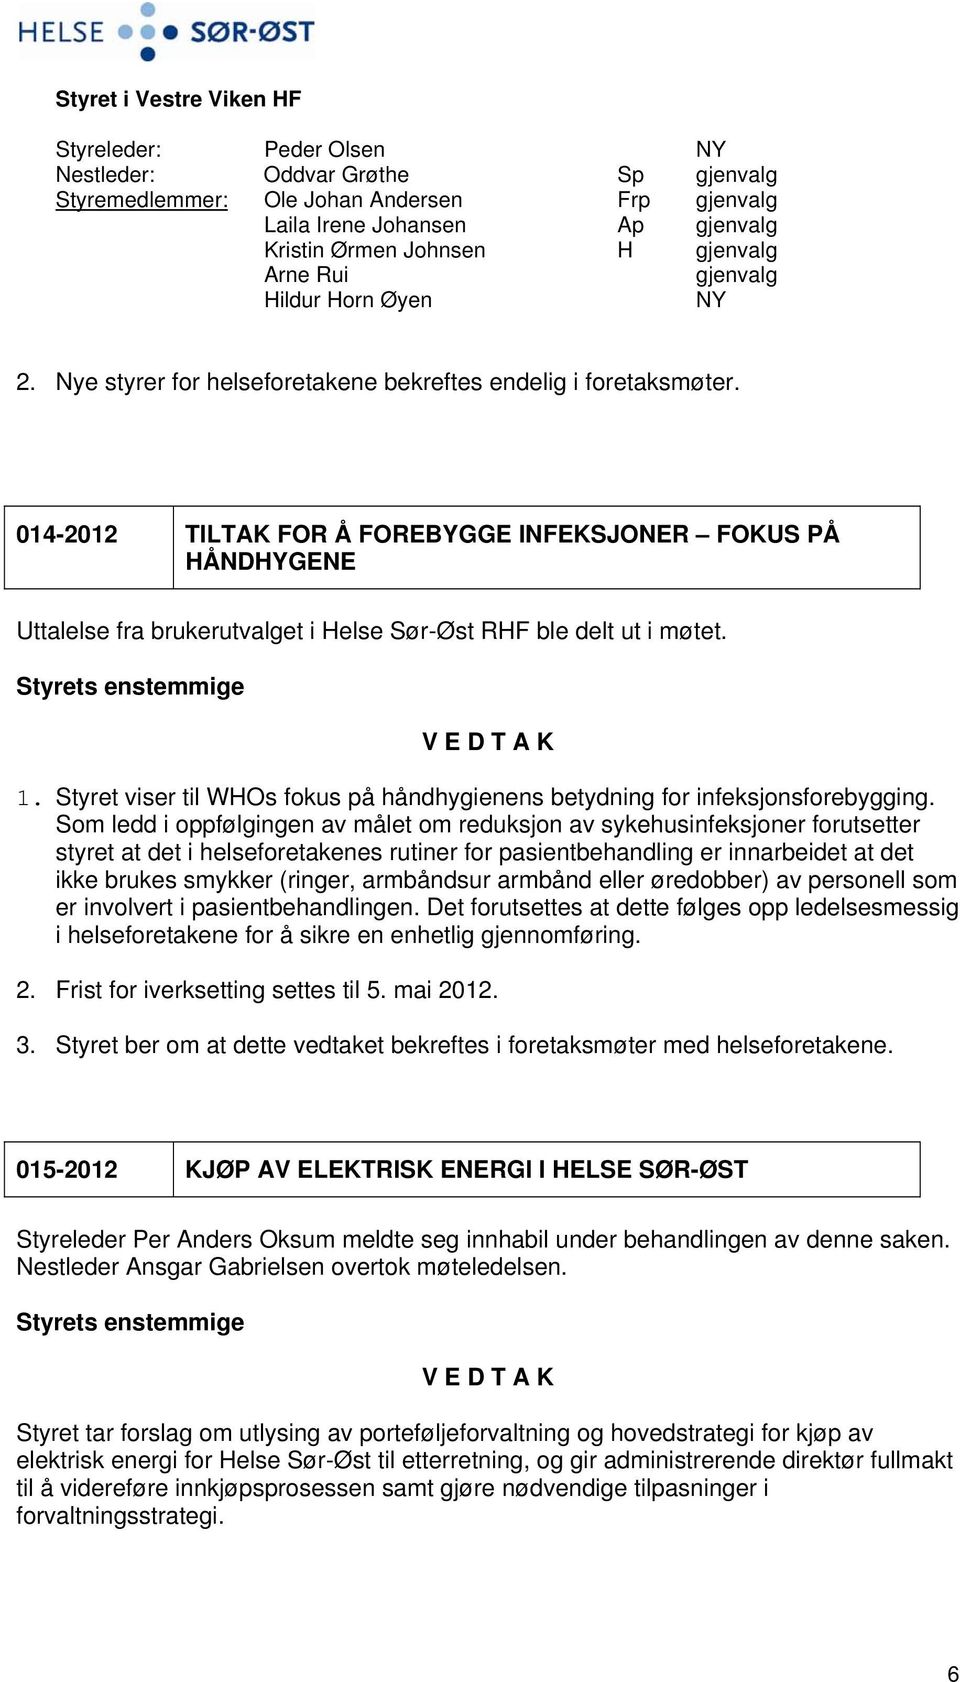 014-2012 TILTAK FOR Å FOREBYGGE INFEKSJONER FOKUS PÅ HÅNDHYGENE Uttalelse fra brukerutvalget i Helse Sør-Øst RHF ble delt ut i møtet. 1.